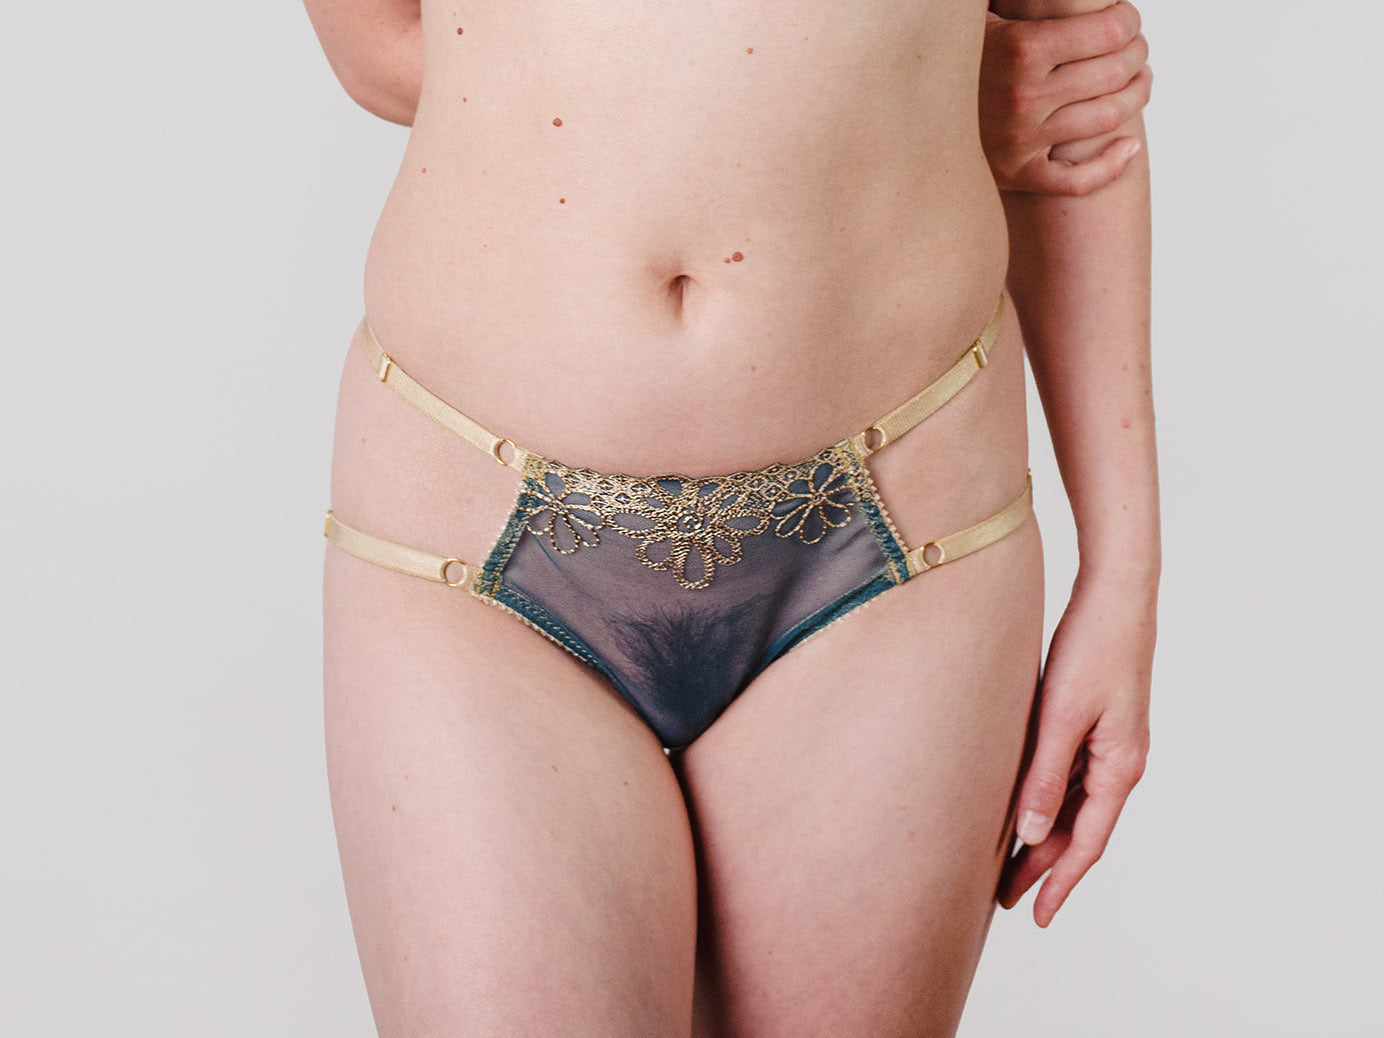 Harness-Panty aus floral bestickter Tüll-Spitze und fein schimmernder Microfaser in den Farben Gold und Petrol